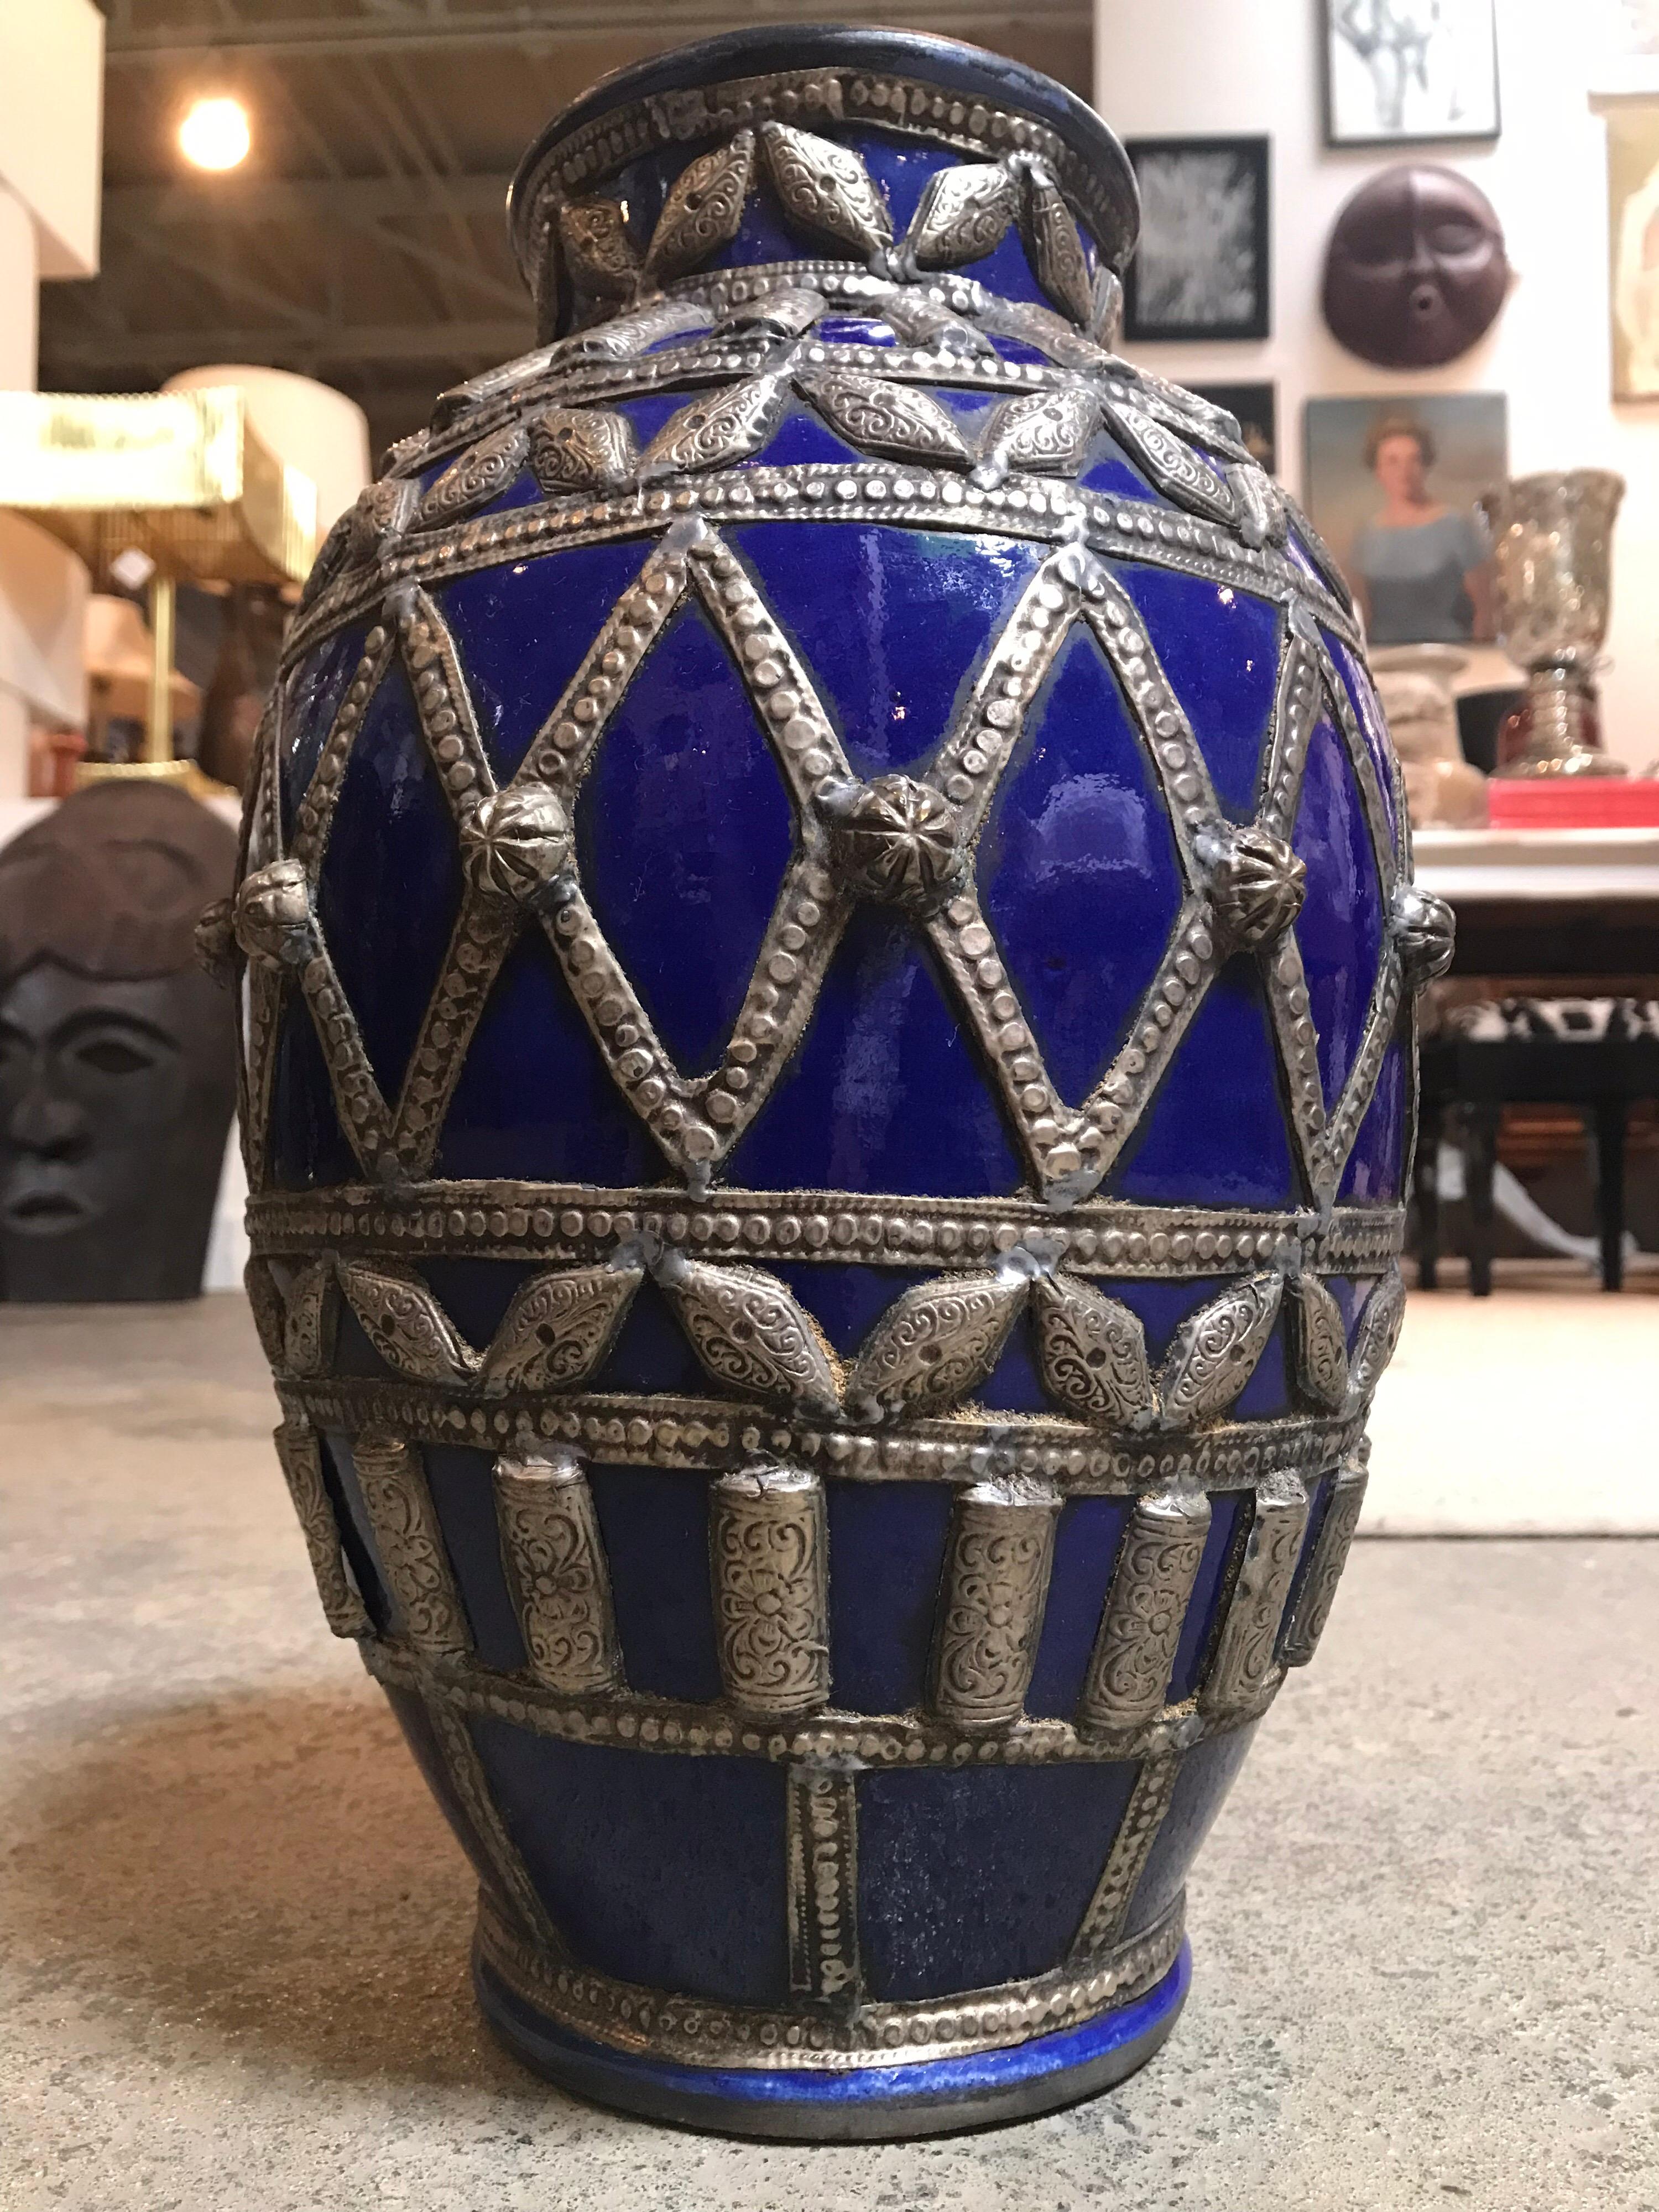 Diese größere, dunkelblaue marokkanische Kanne ist handbemalt und mit einer Keramikglasur versehen. Es ist mit verschiedenen Bändern aus silberähnlichem Metall verziert, die durchweg runde geometrische Muster ergeben.